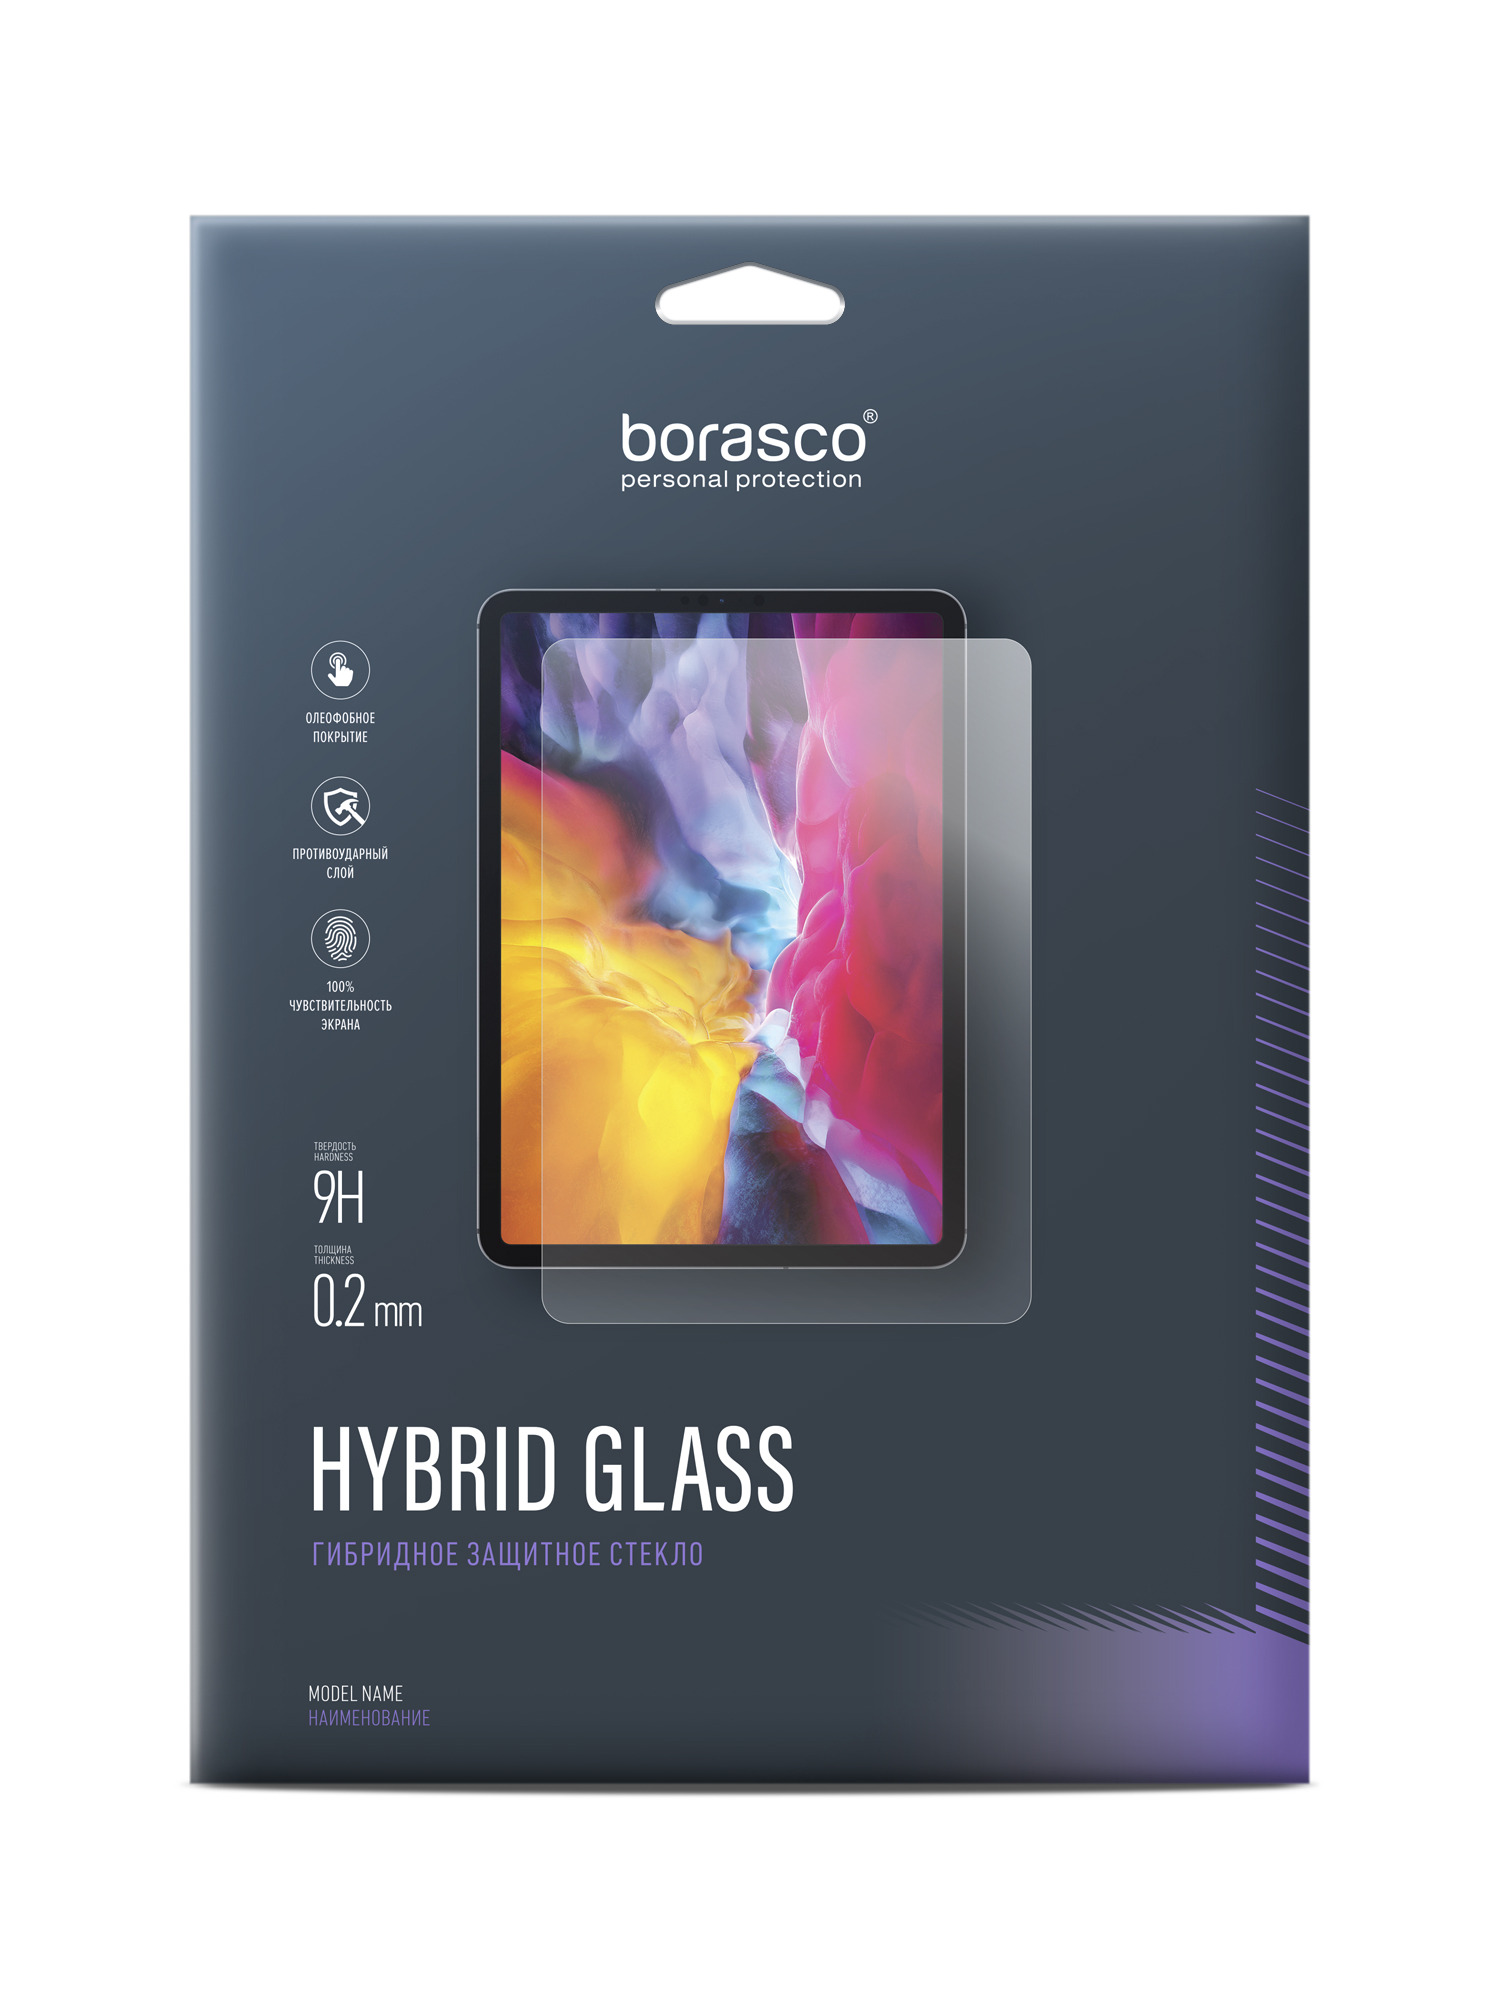 Защитное стекло Hybrid Glass для Lenovo Tab E10 TB-X104L/TB-X104F защитное закаленное стекло для планшета lenovo tb x104f tab e10 10 1 дюйма 2 шт